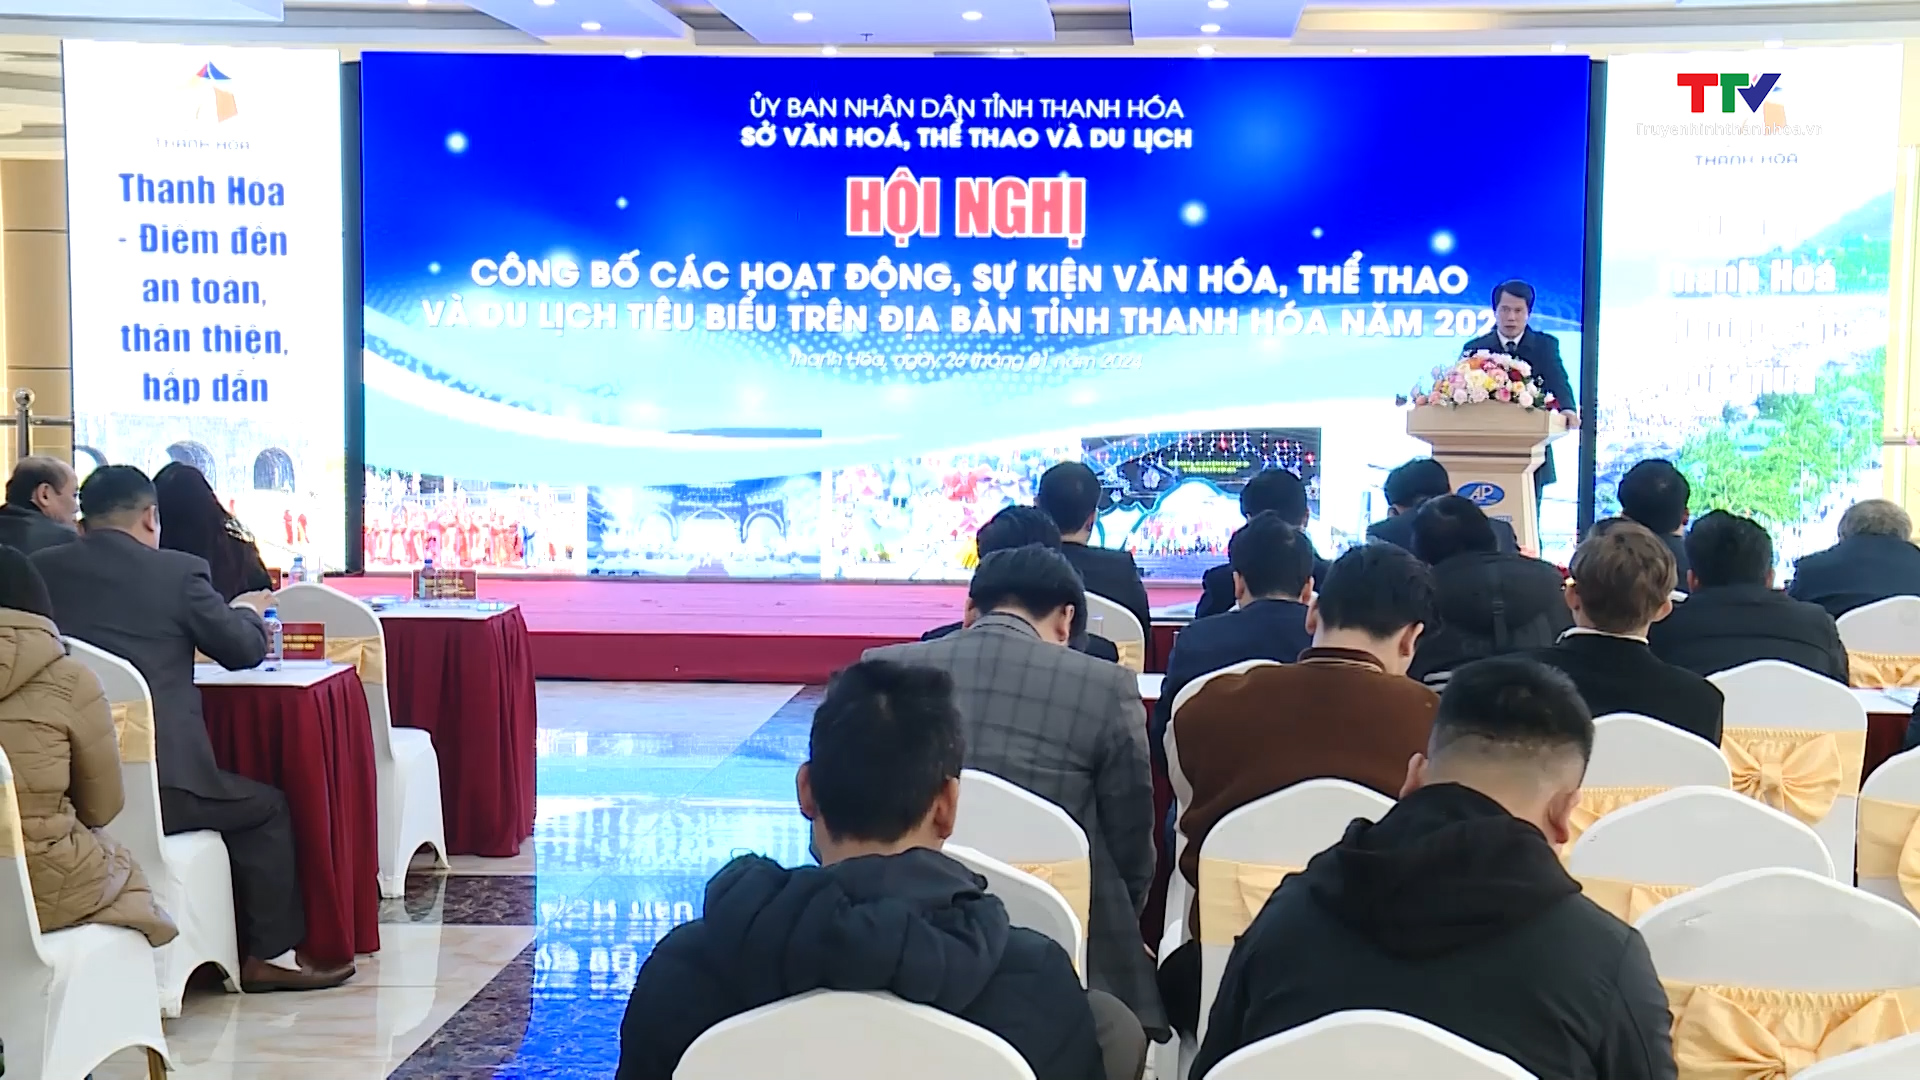 Công bố các hoạt động, sự kiện văn hoá, thể thao và du lịch tiêu biểu trên địa bàn tỉnh Thanh Hoá năm 2024- Ảnh 1.